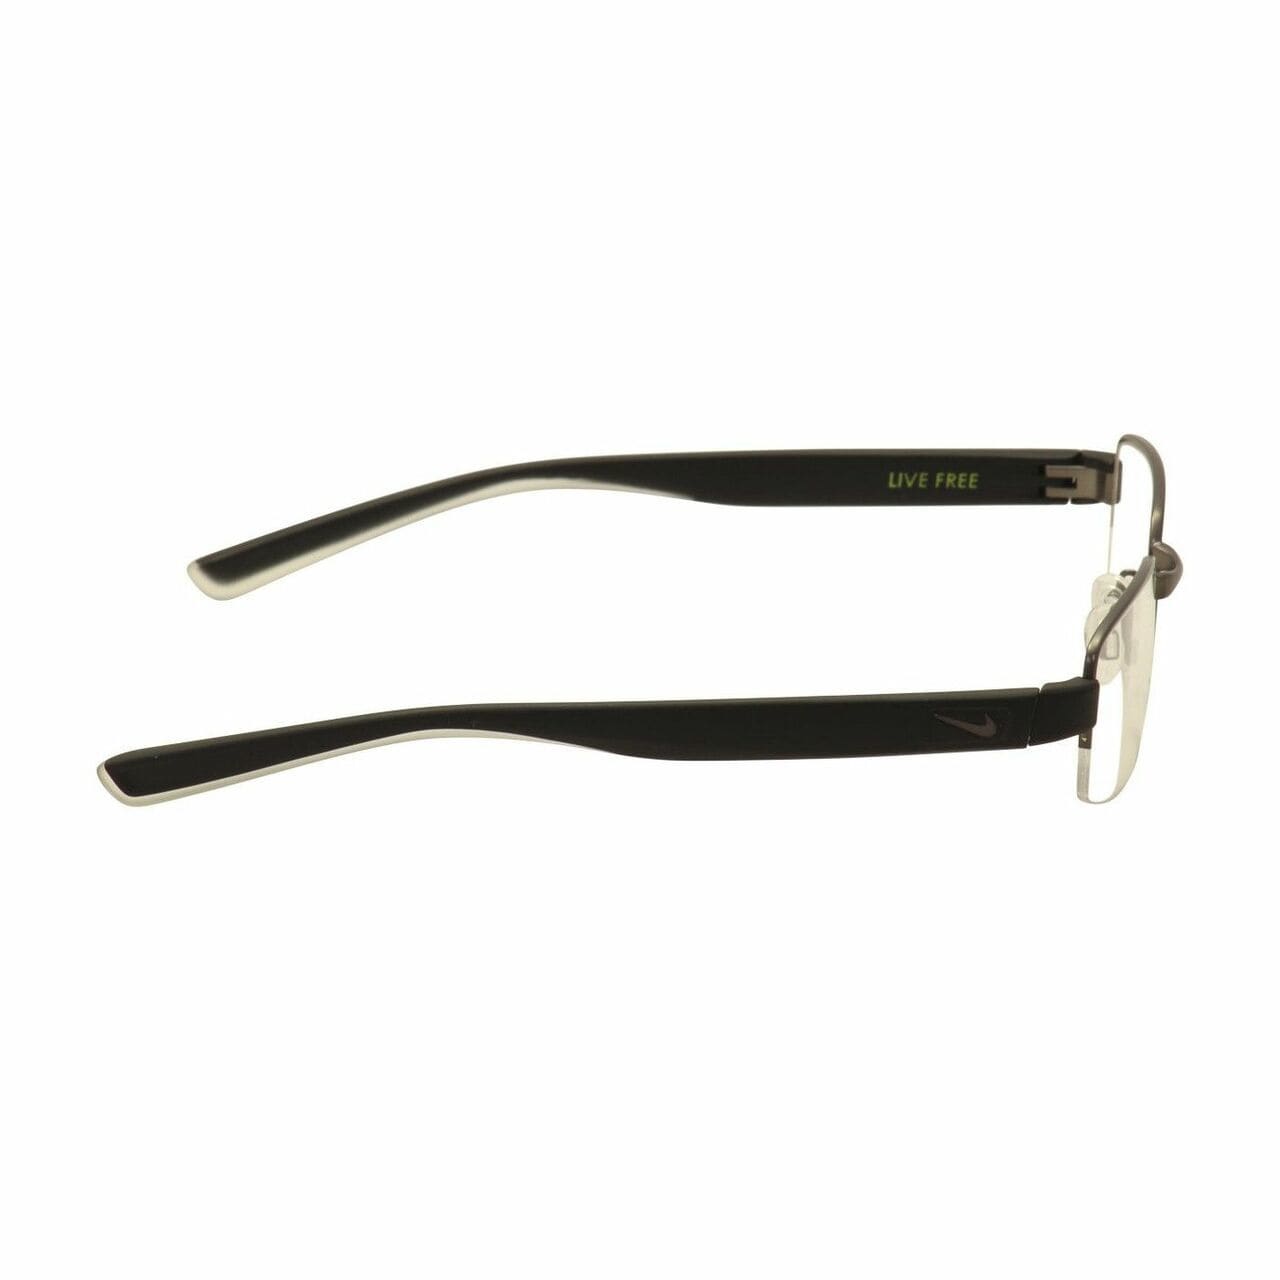 Nike 8169-070 Satin Gunmetal Black Men's Rectangular Metal Eyeglasses 886895222006